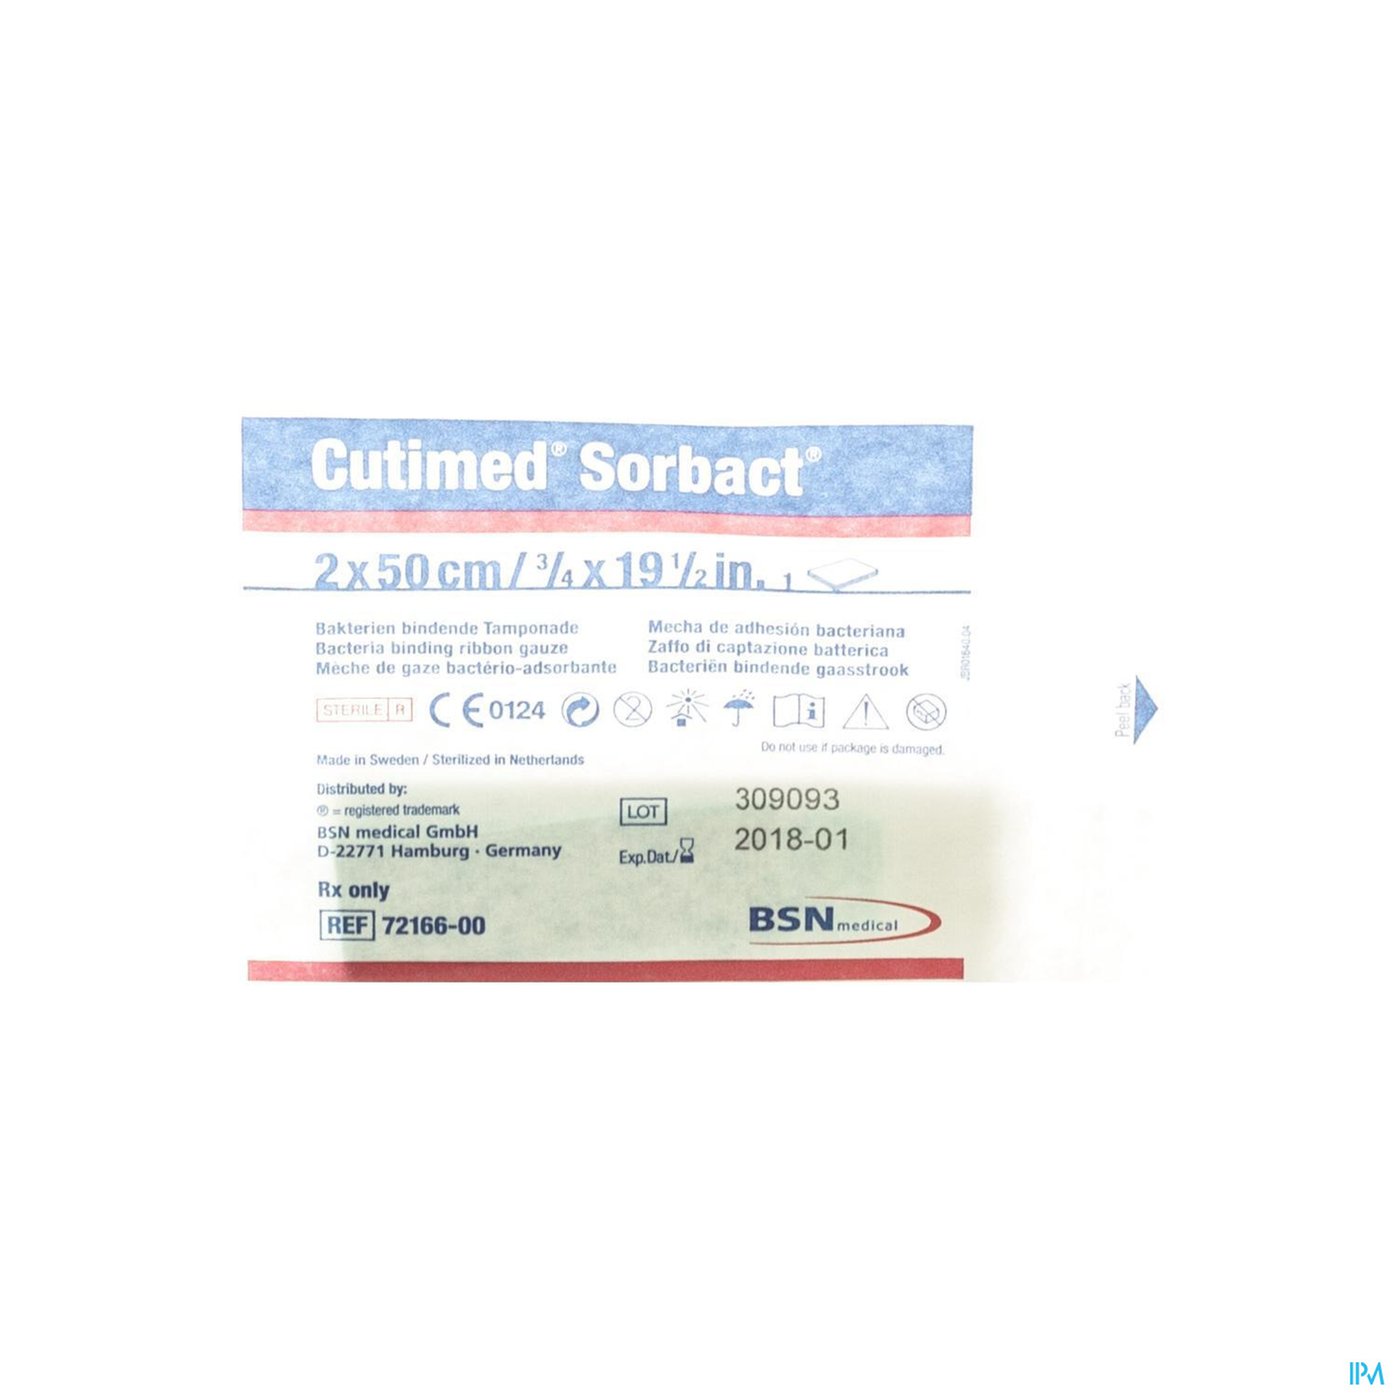 Cutimed Sorbact Gaasstrook 2x50cm 1 7216600 packshot